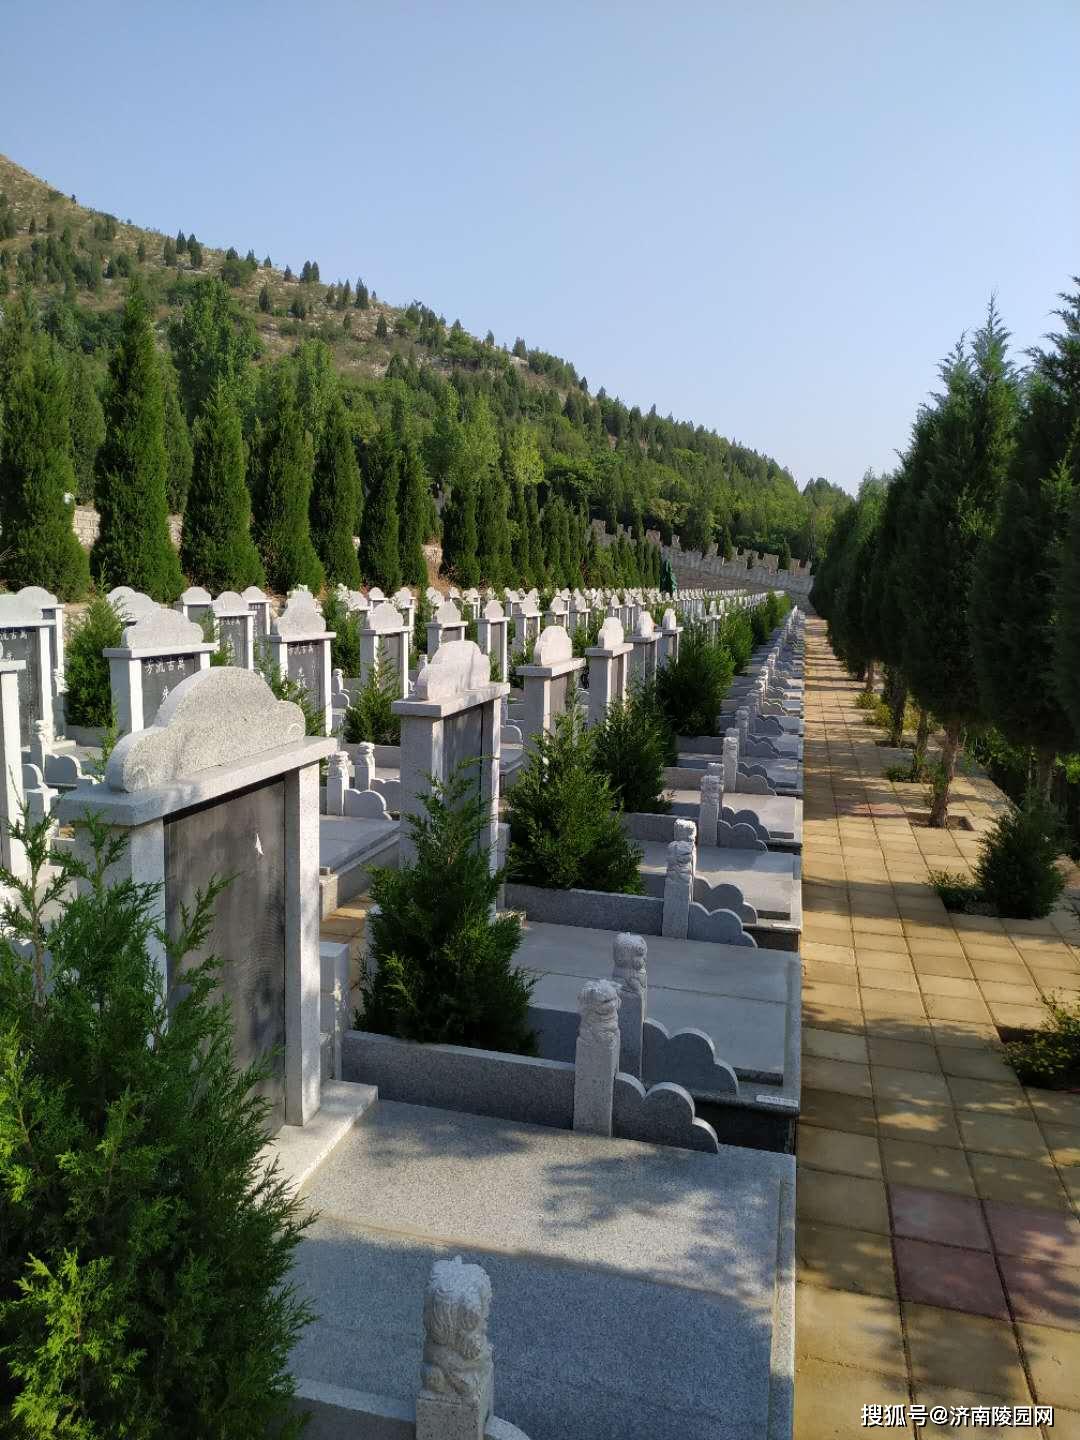 济南陵园网:济南九顶山公墓 一家环境优美的公益性合法公墓